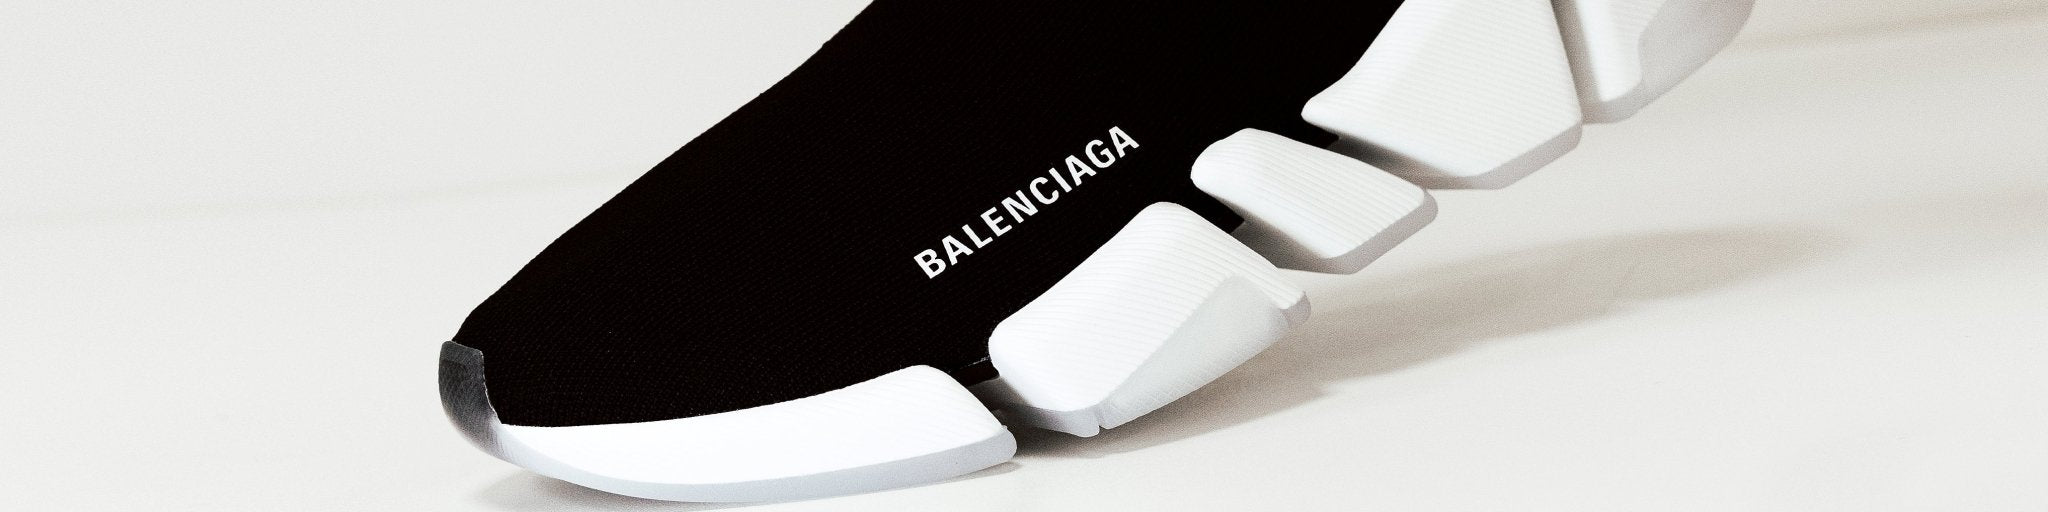 Dames Balenciaga - Eleganza.nl